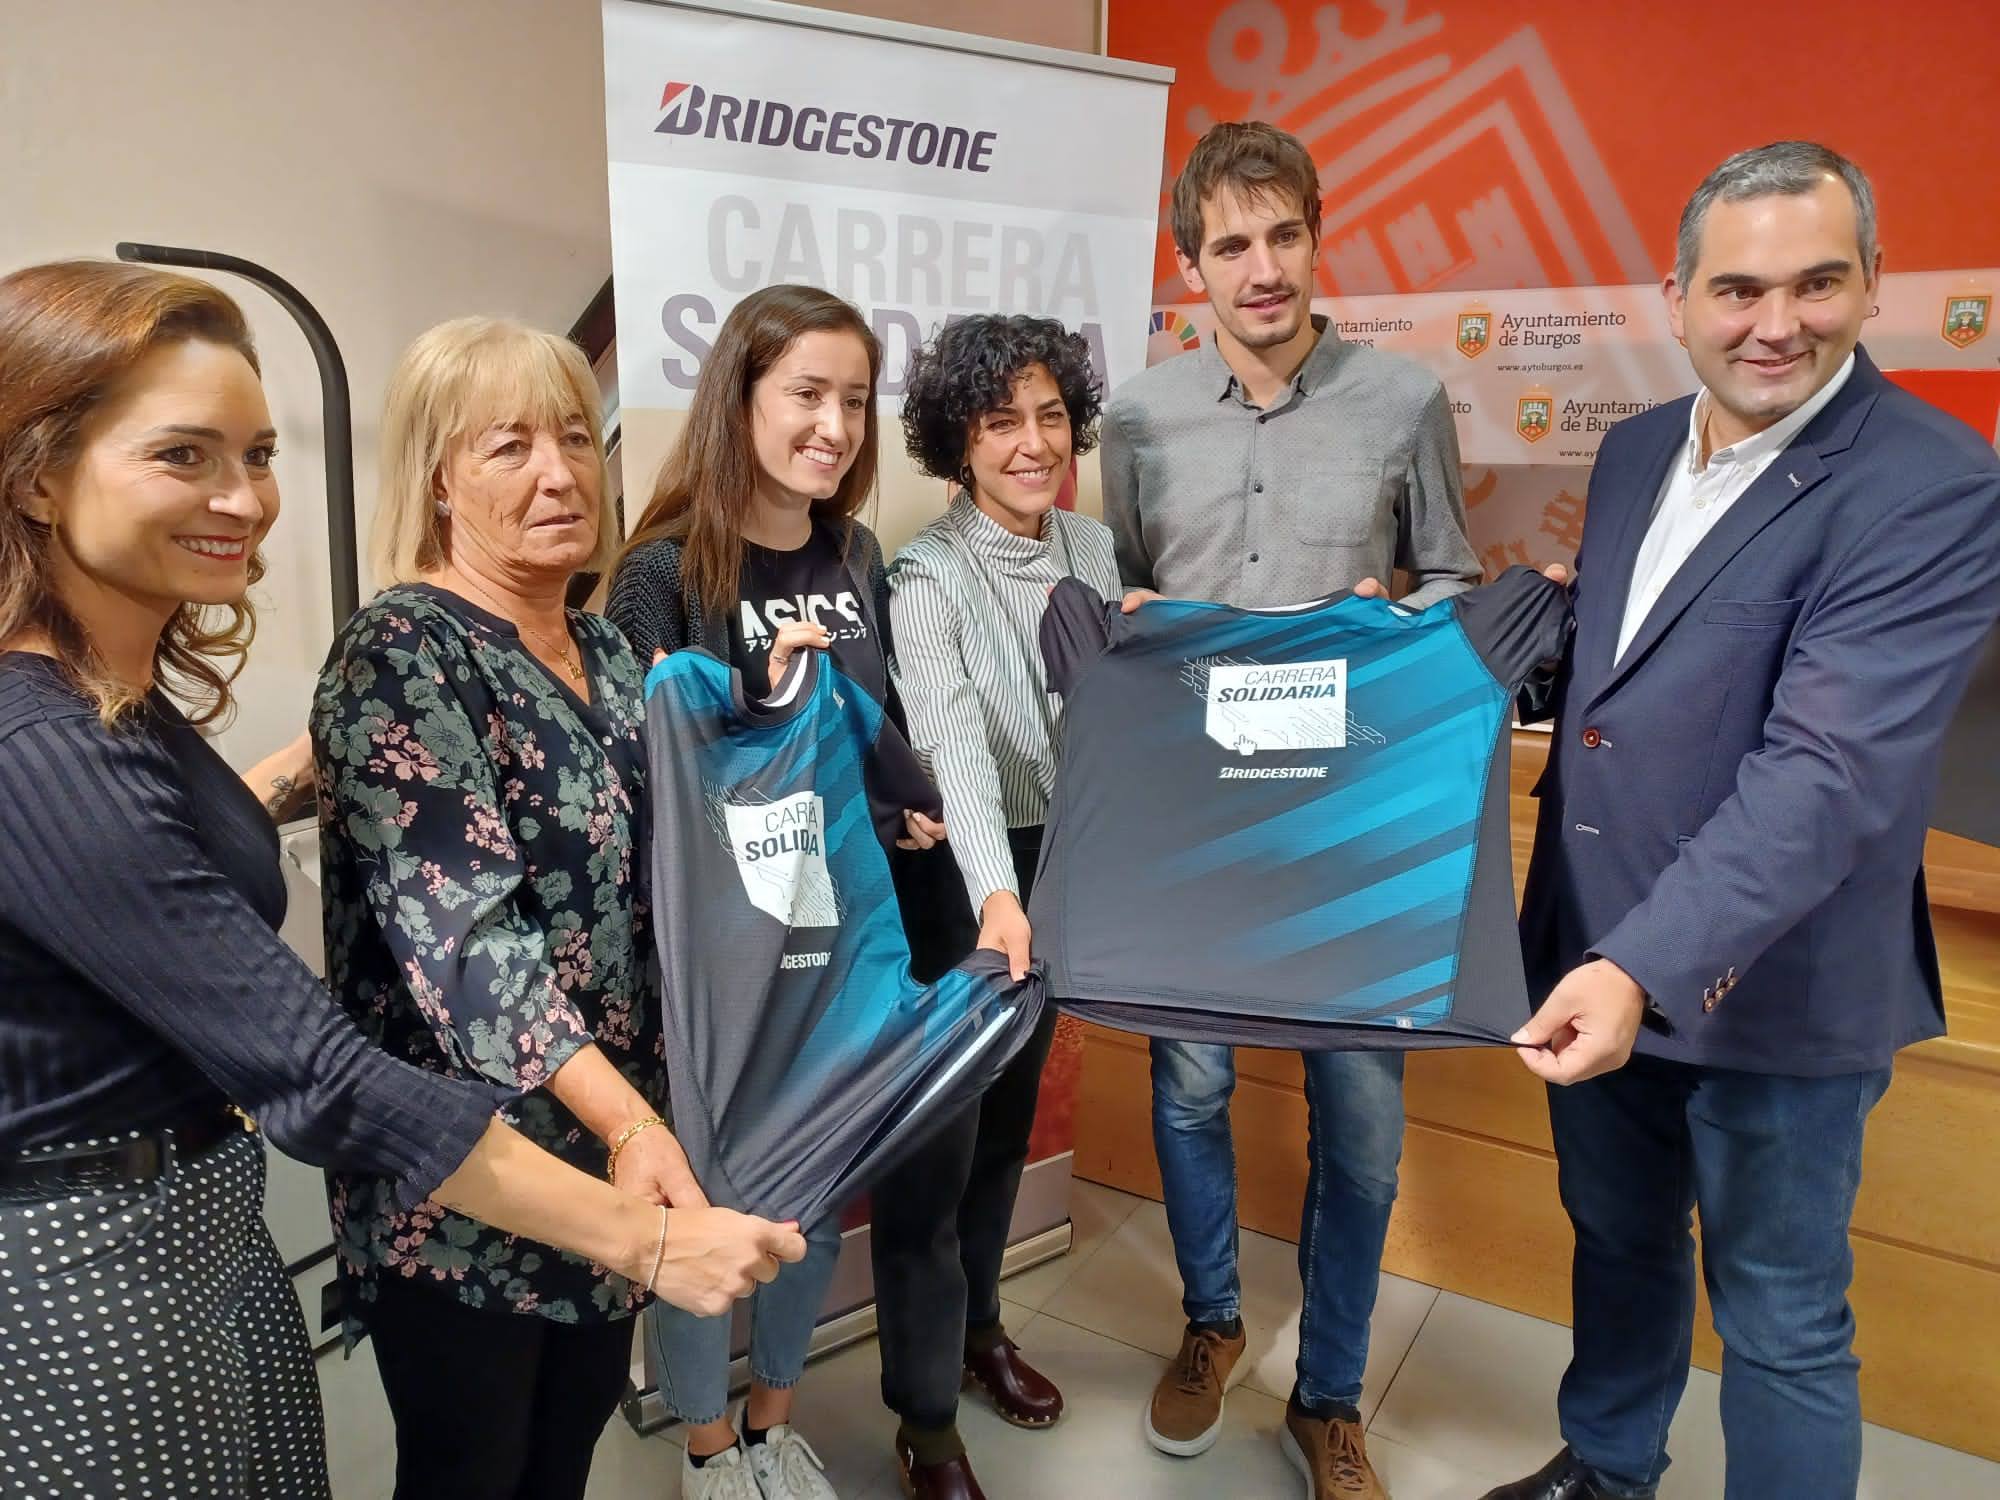 La planta de Bridgestone en Burgos recupera su tradicional carrera solidaria